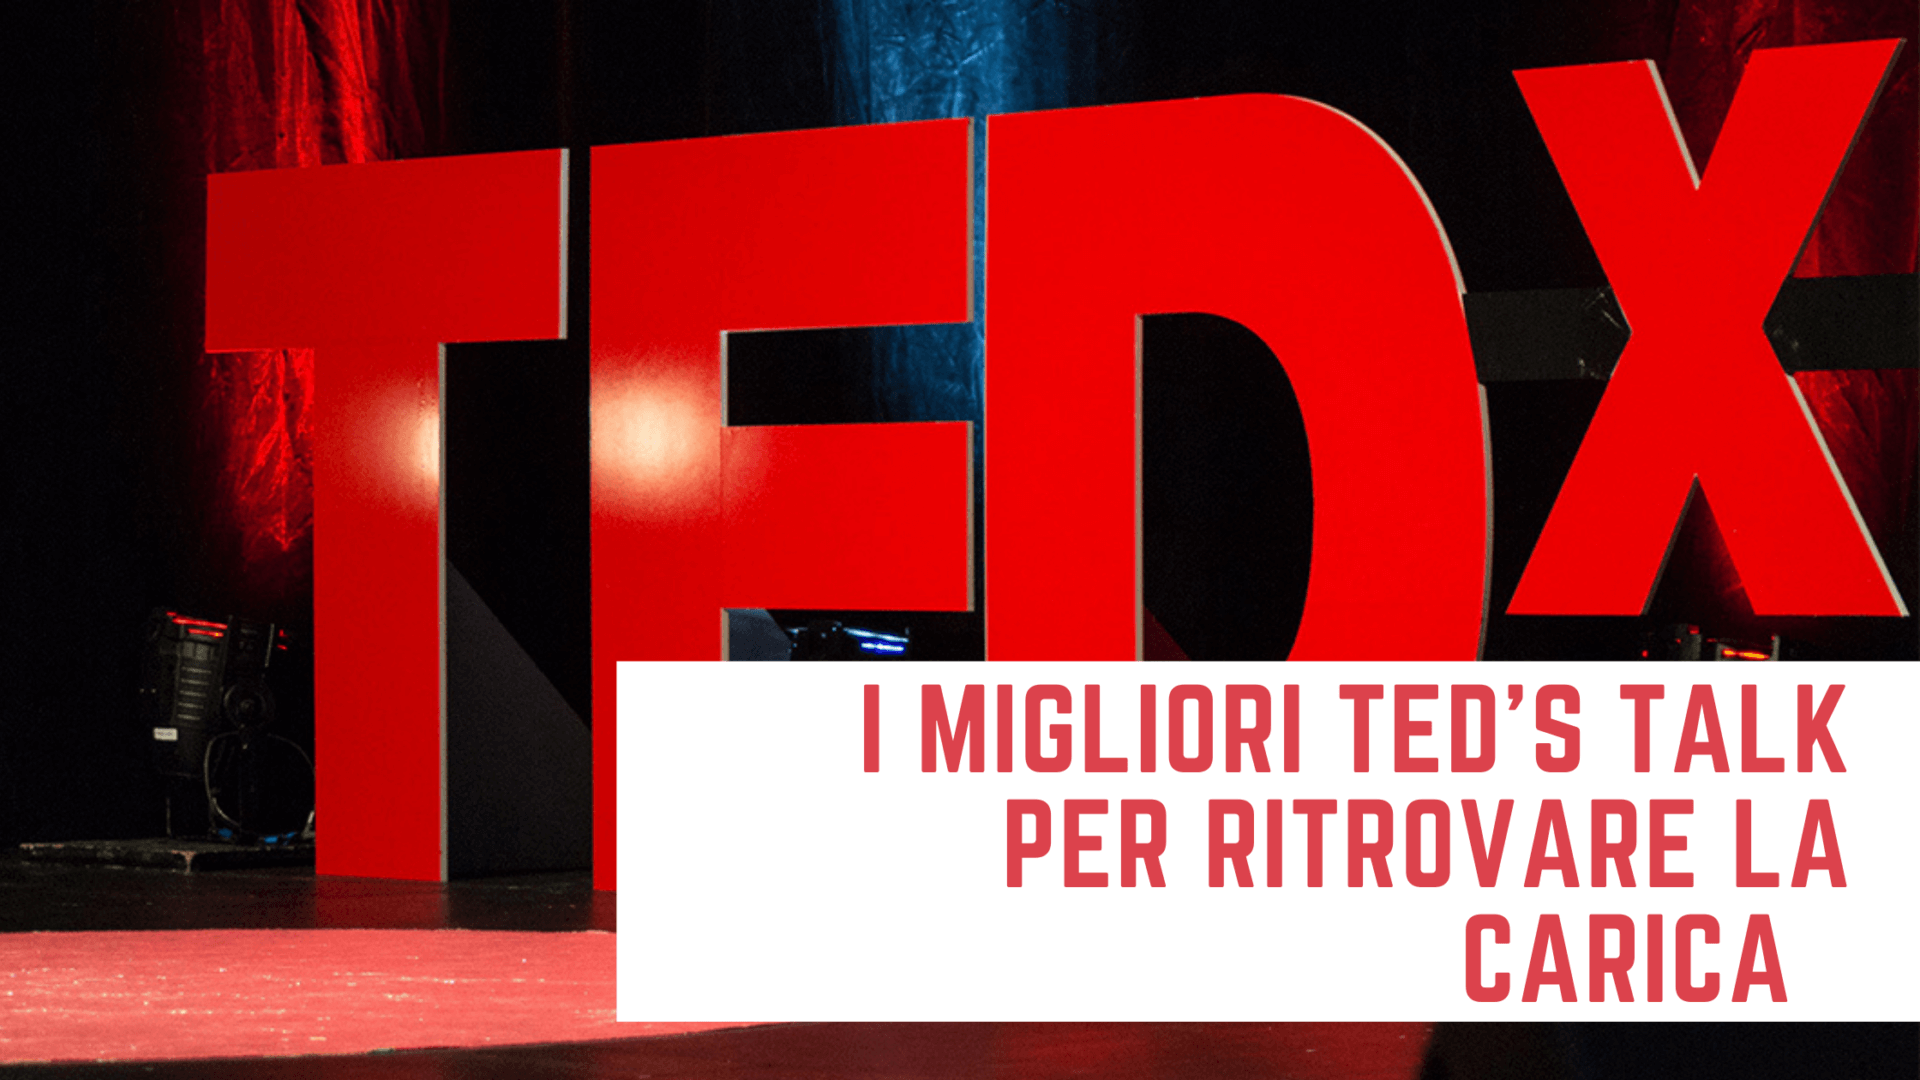 I migliori TED’s talk per ritrovare la giusta carica